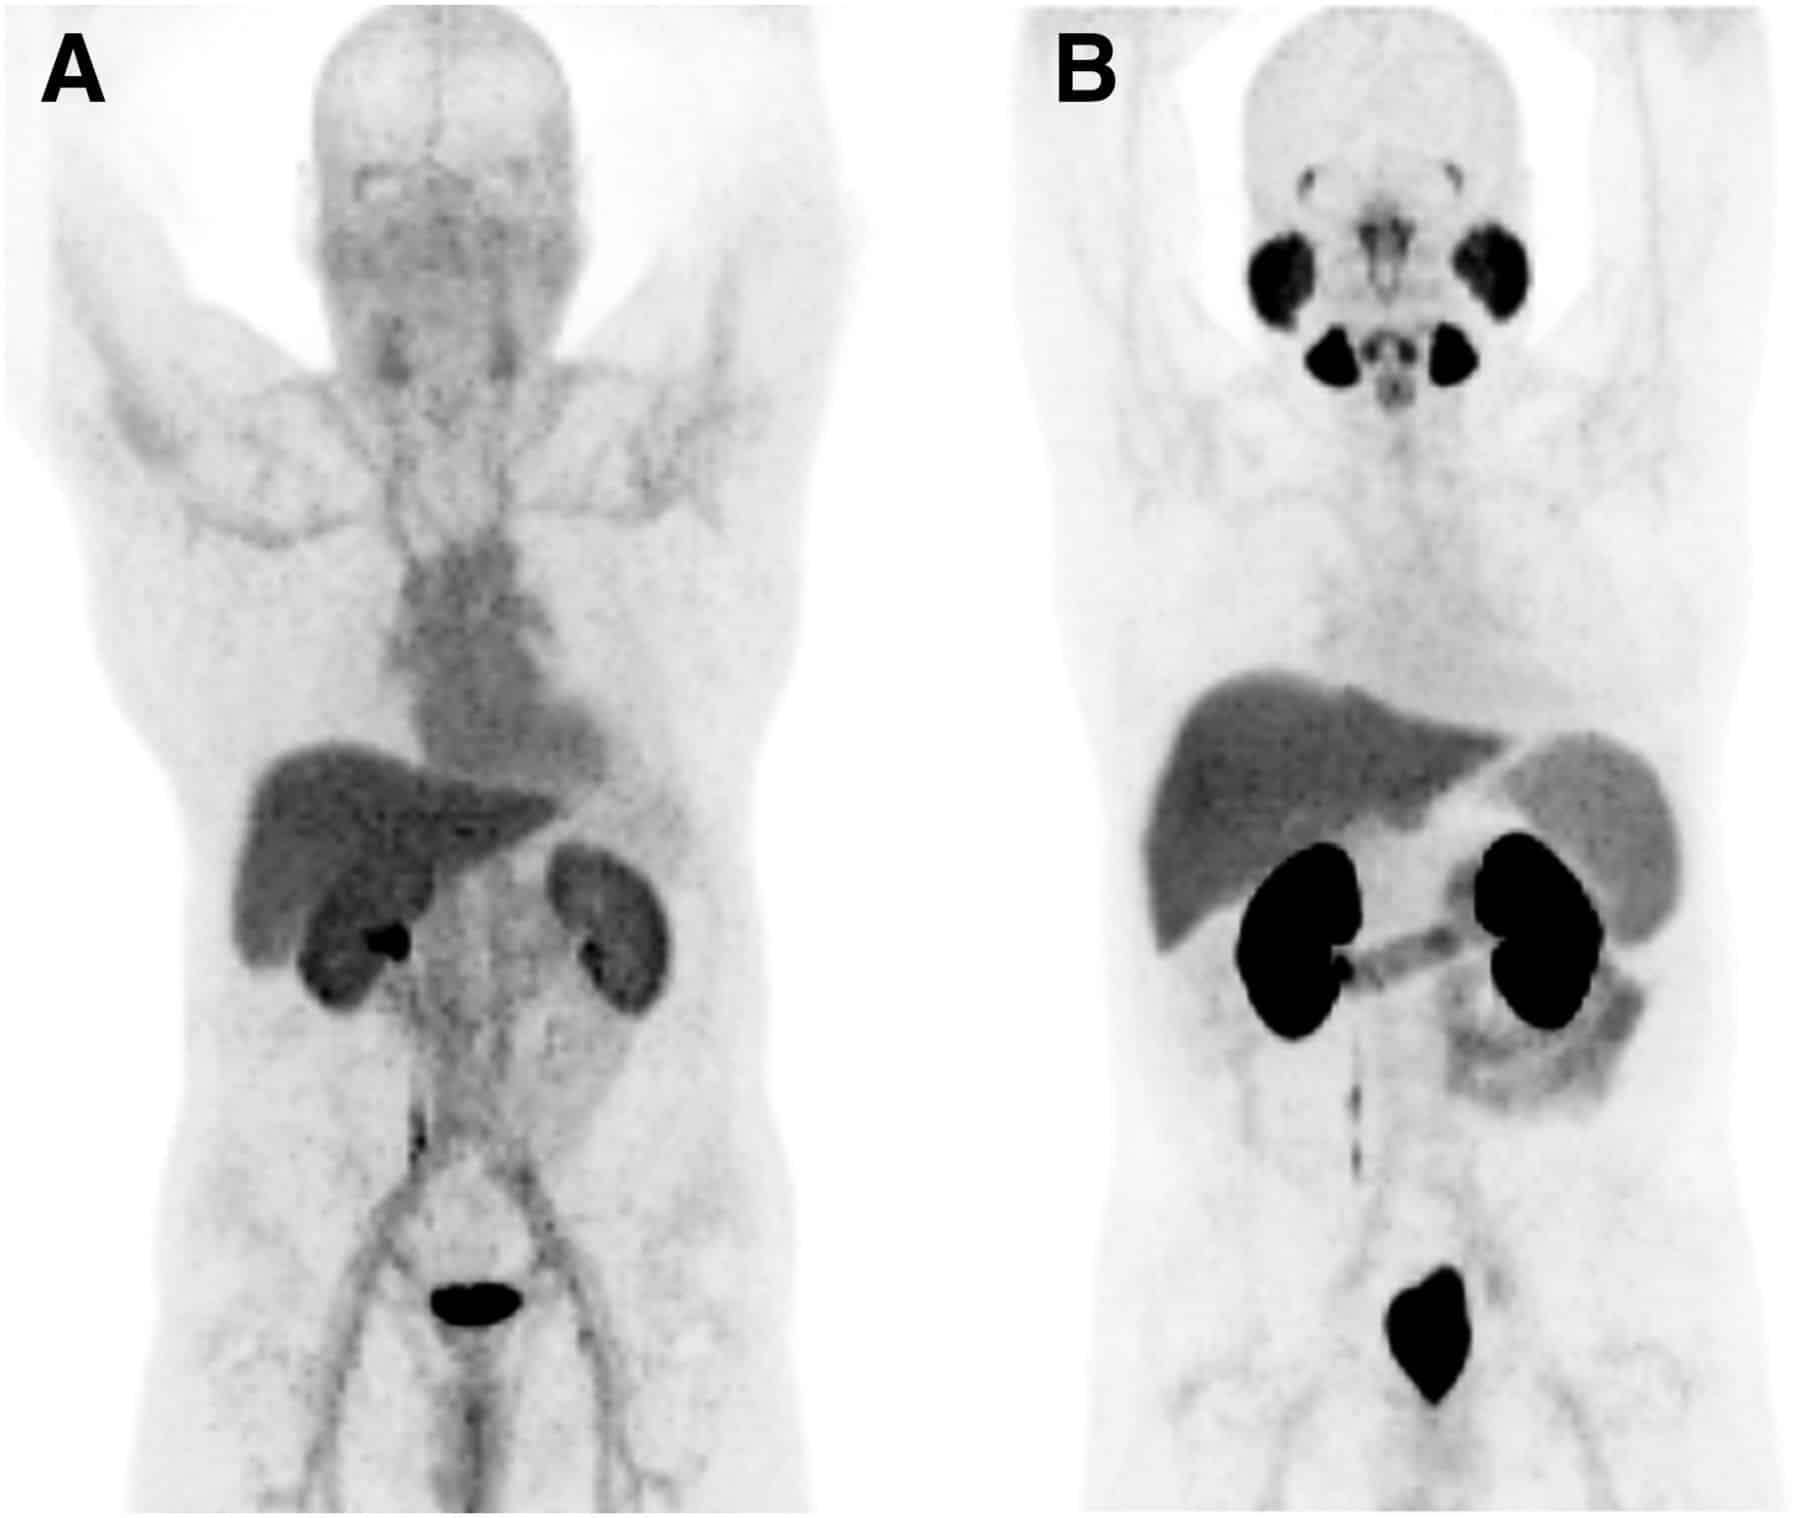 PSMA Ligands for PET Imaging of Prostate Cancer